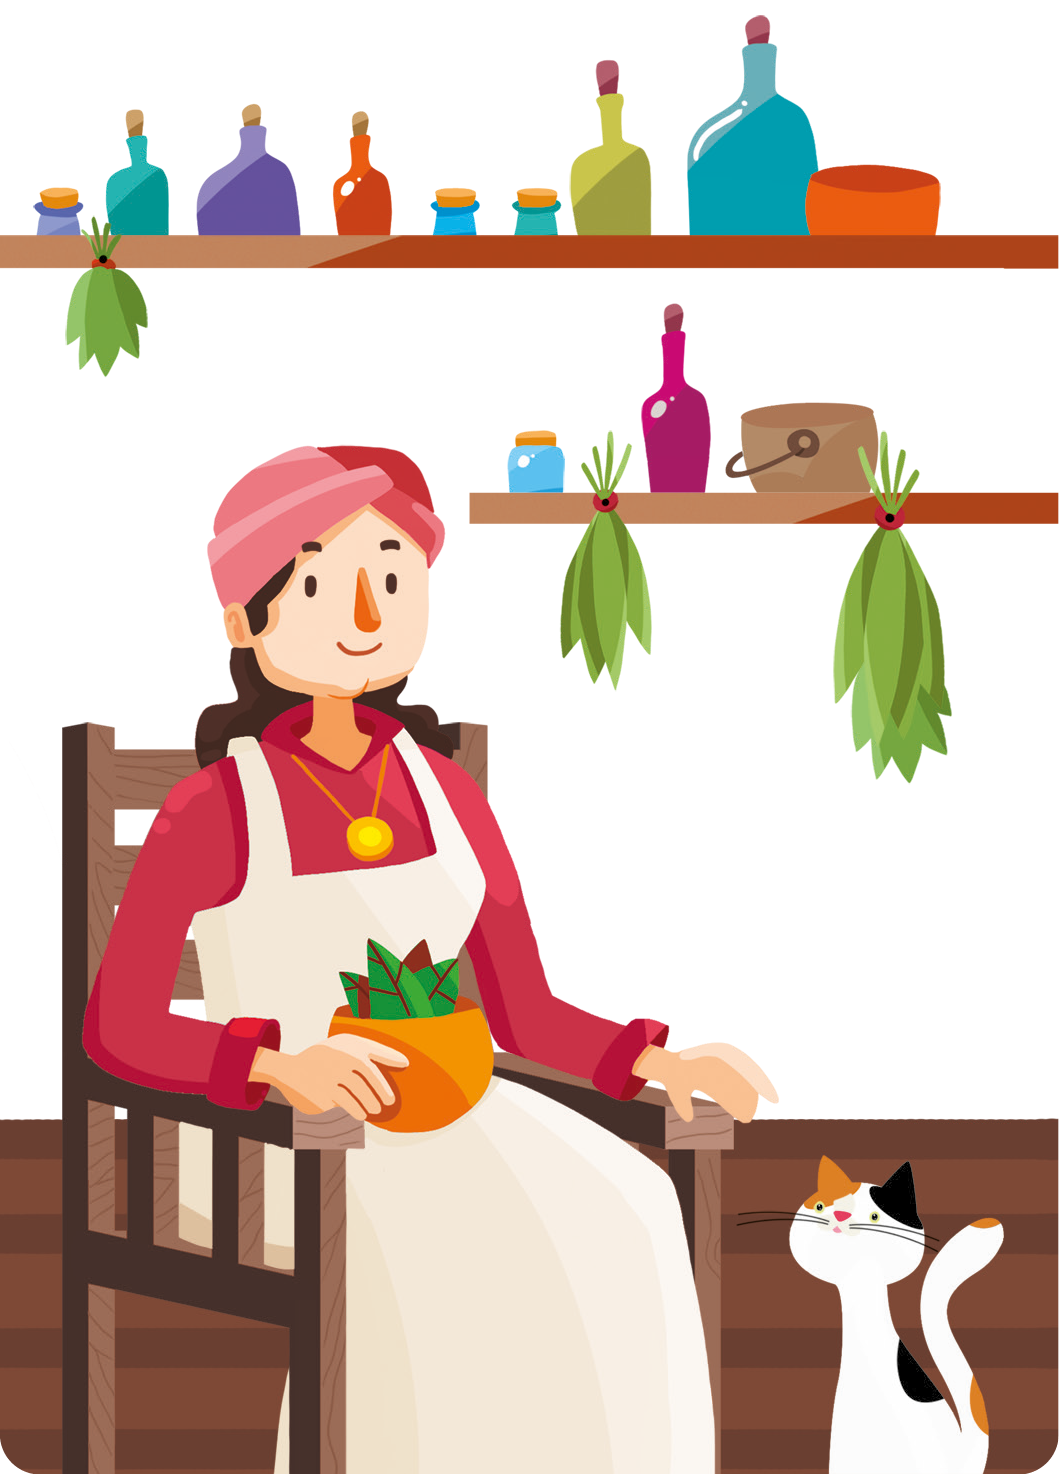 Ilustração. Uma mulher com um lenço na cabeça, usando um vestido, um colar e um avental. Ela está sentada em uma cadeira de madeira, segurando no colo um pote com plantas. Ao lado, um gato. Atrás, prateleiras com potes e plantas penduradas.